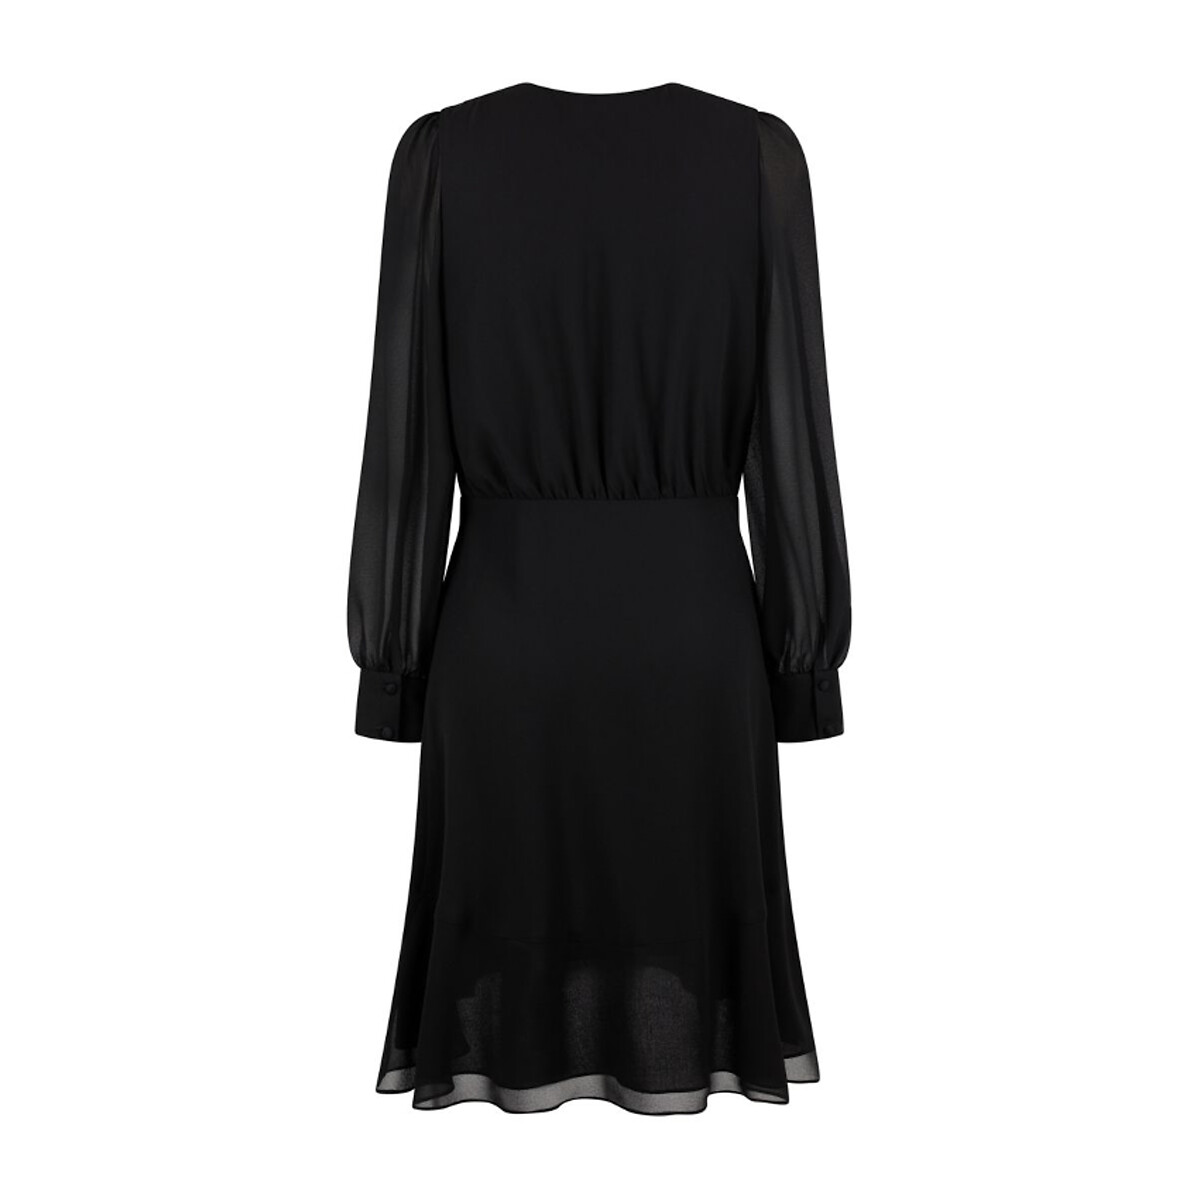 Платье Из вуали с V-образным вырезом длинные рукава 46 черный LaRedoute, размер 46 - фото 2